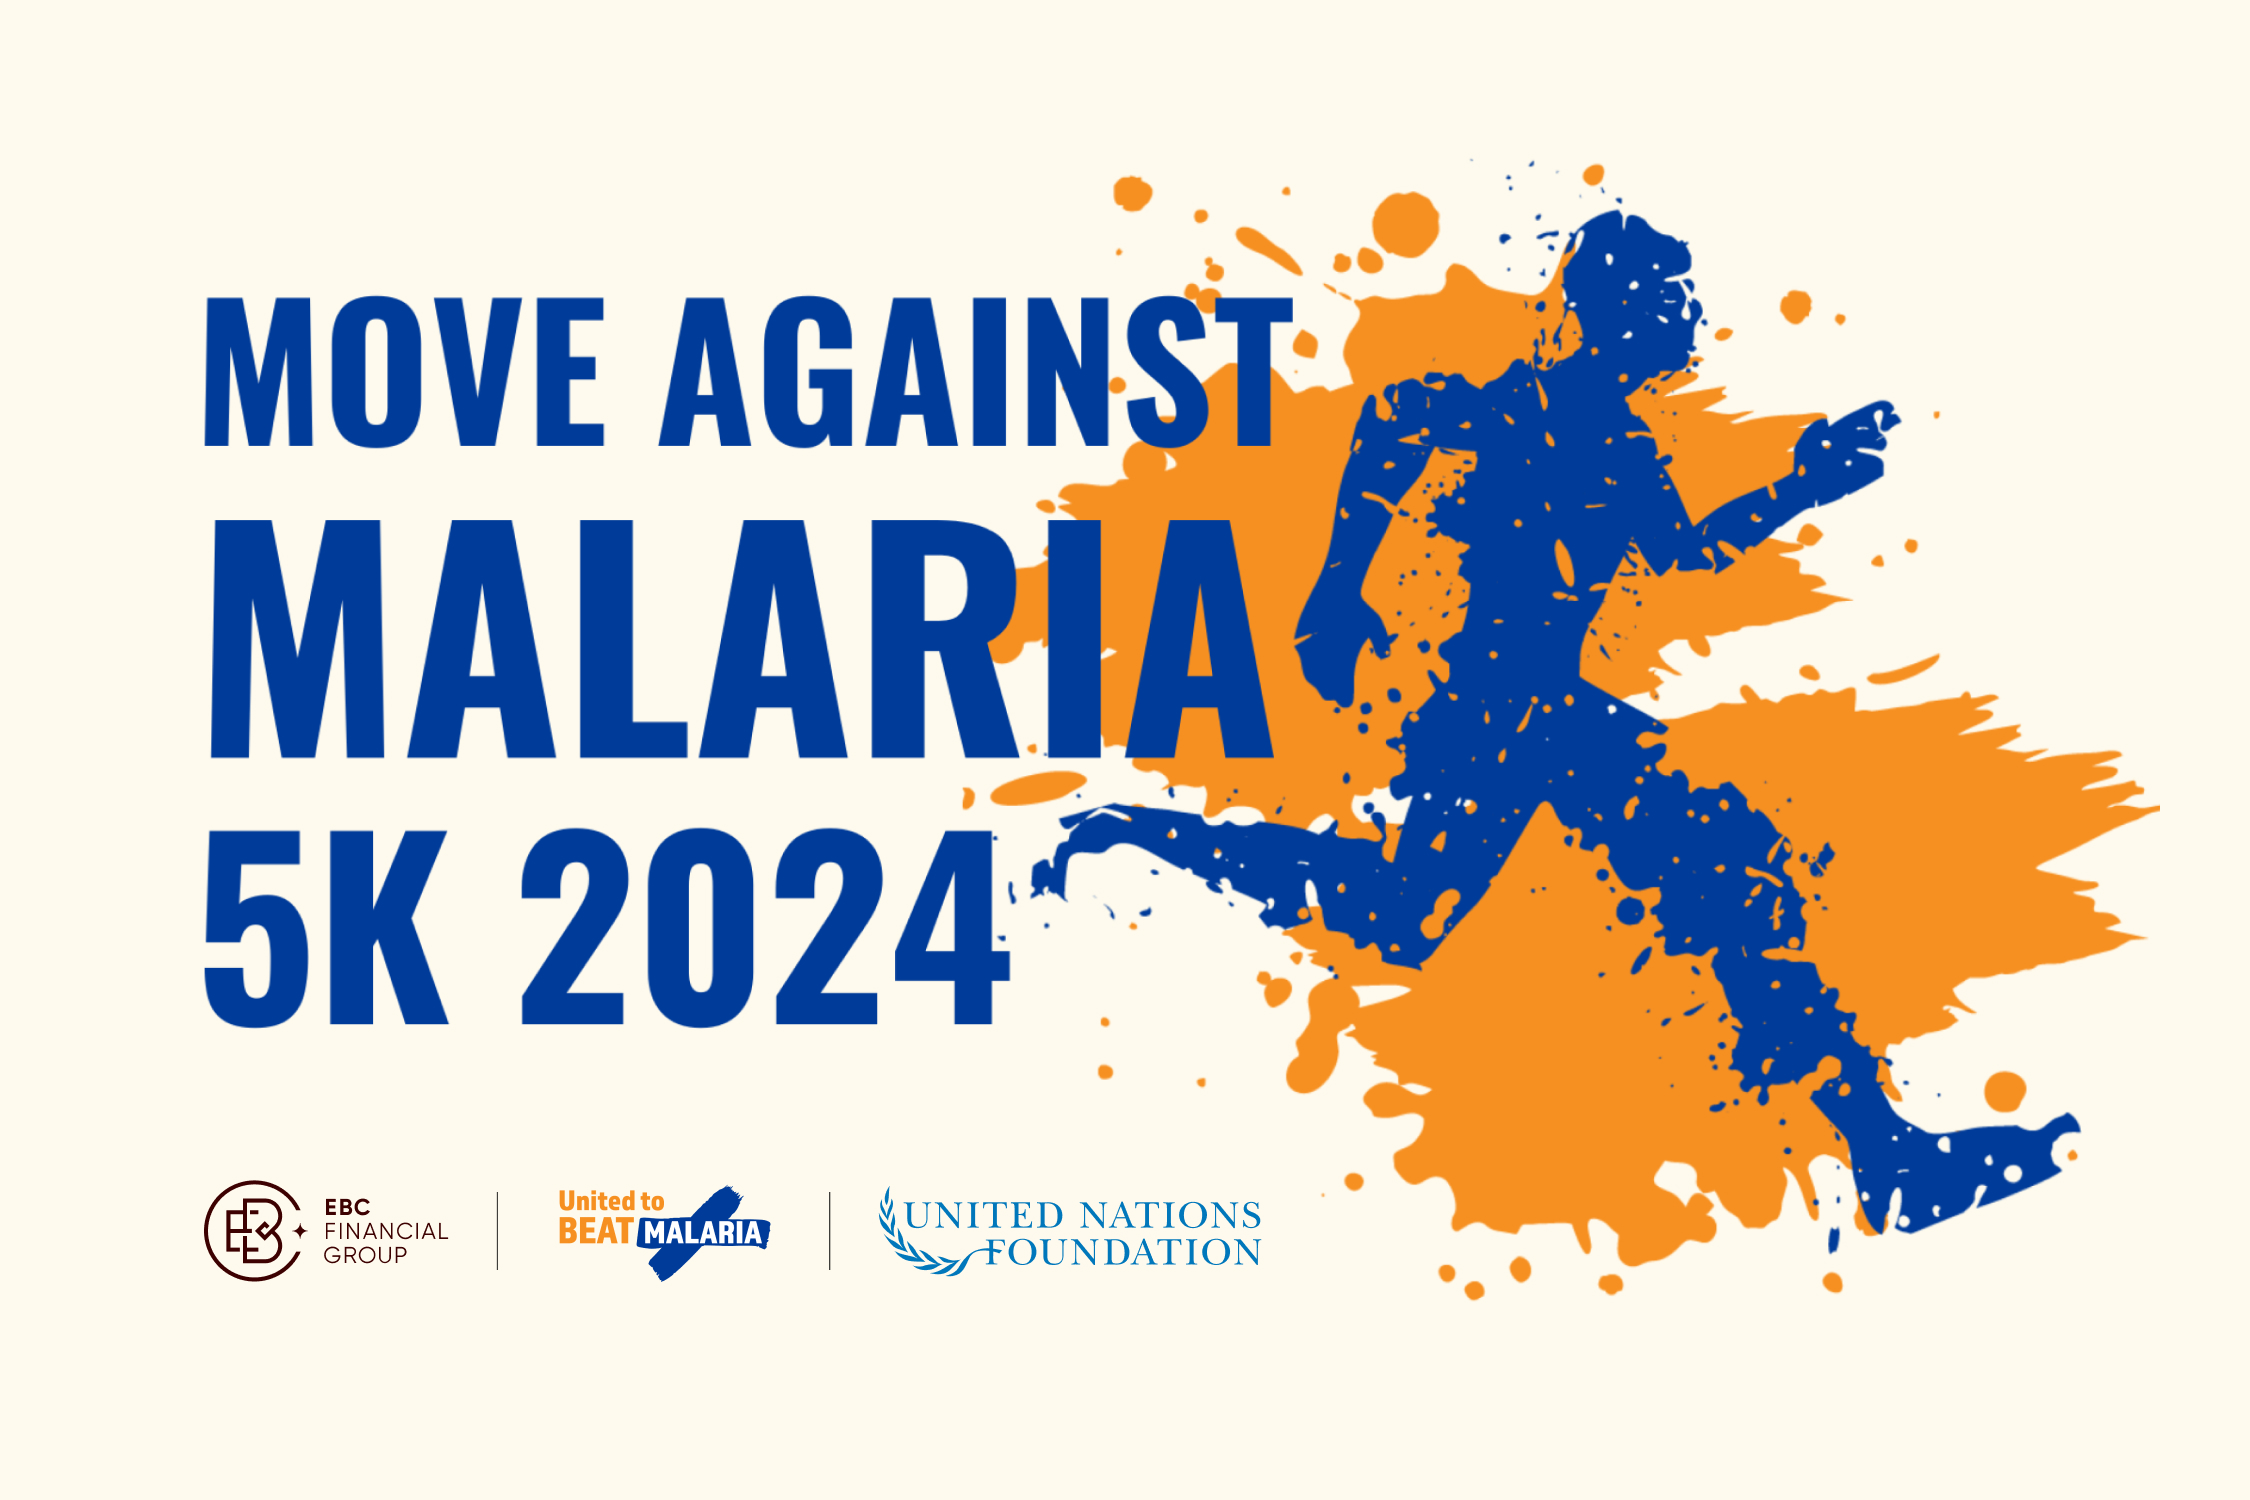 Du 25 avril au 5 mai 2024, rejoignez les supporters du monde entier pour Move Against Malaria, un événement virtuel visant à sensibiliser et à collecter des fonds pour soutenir les outils et les programmes de traitement du paludisme qui sauvent des vies.